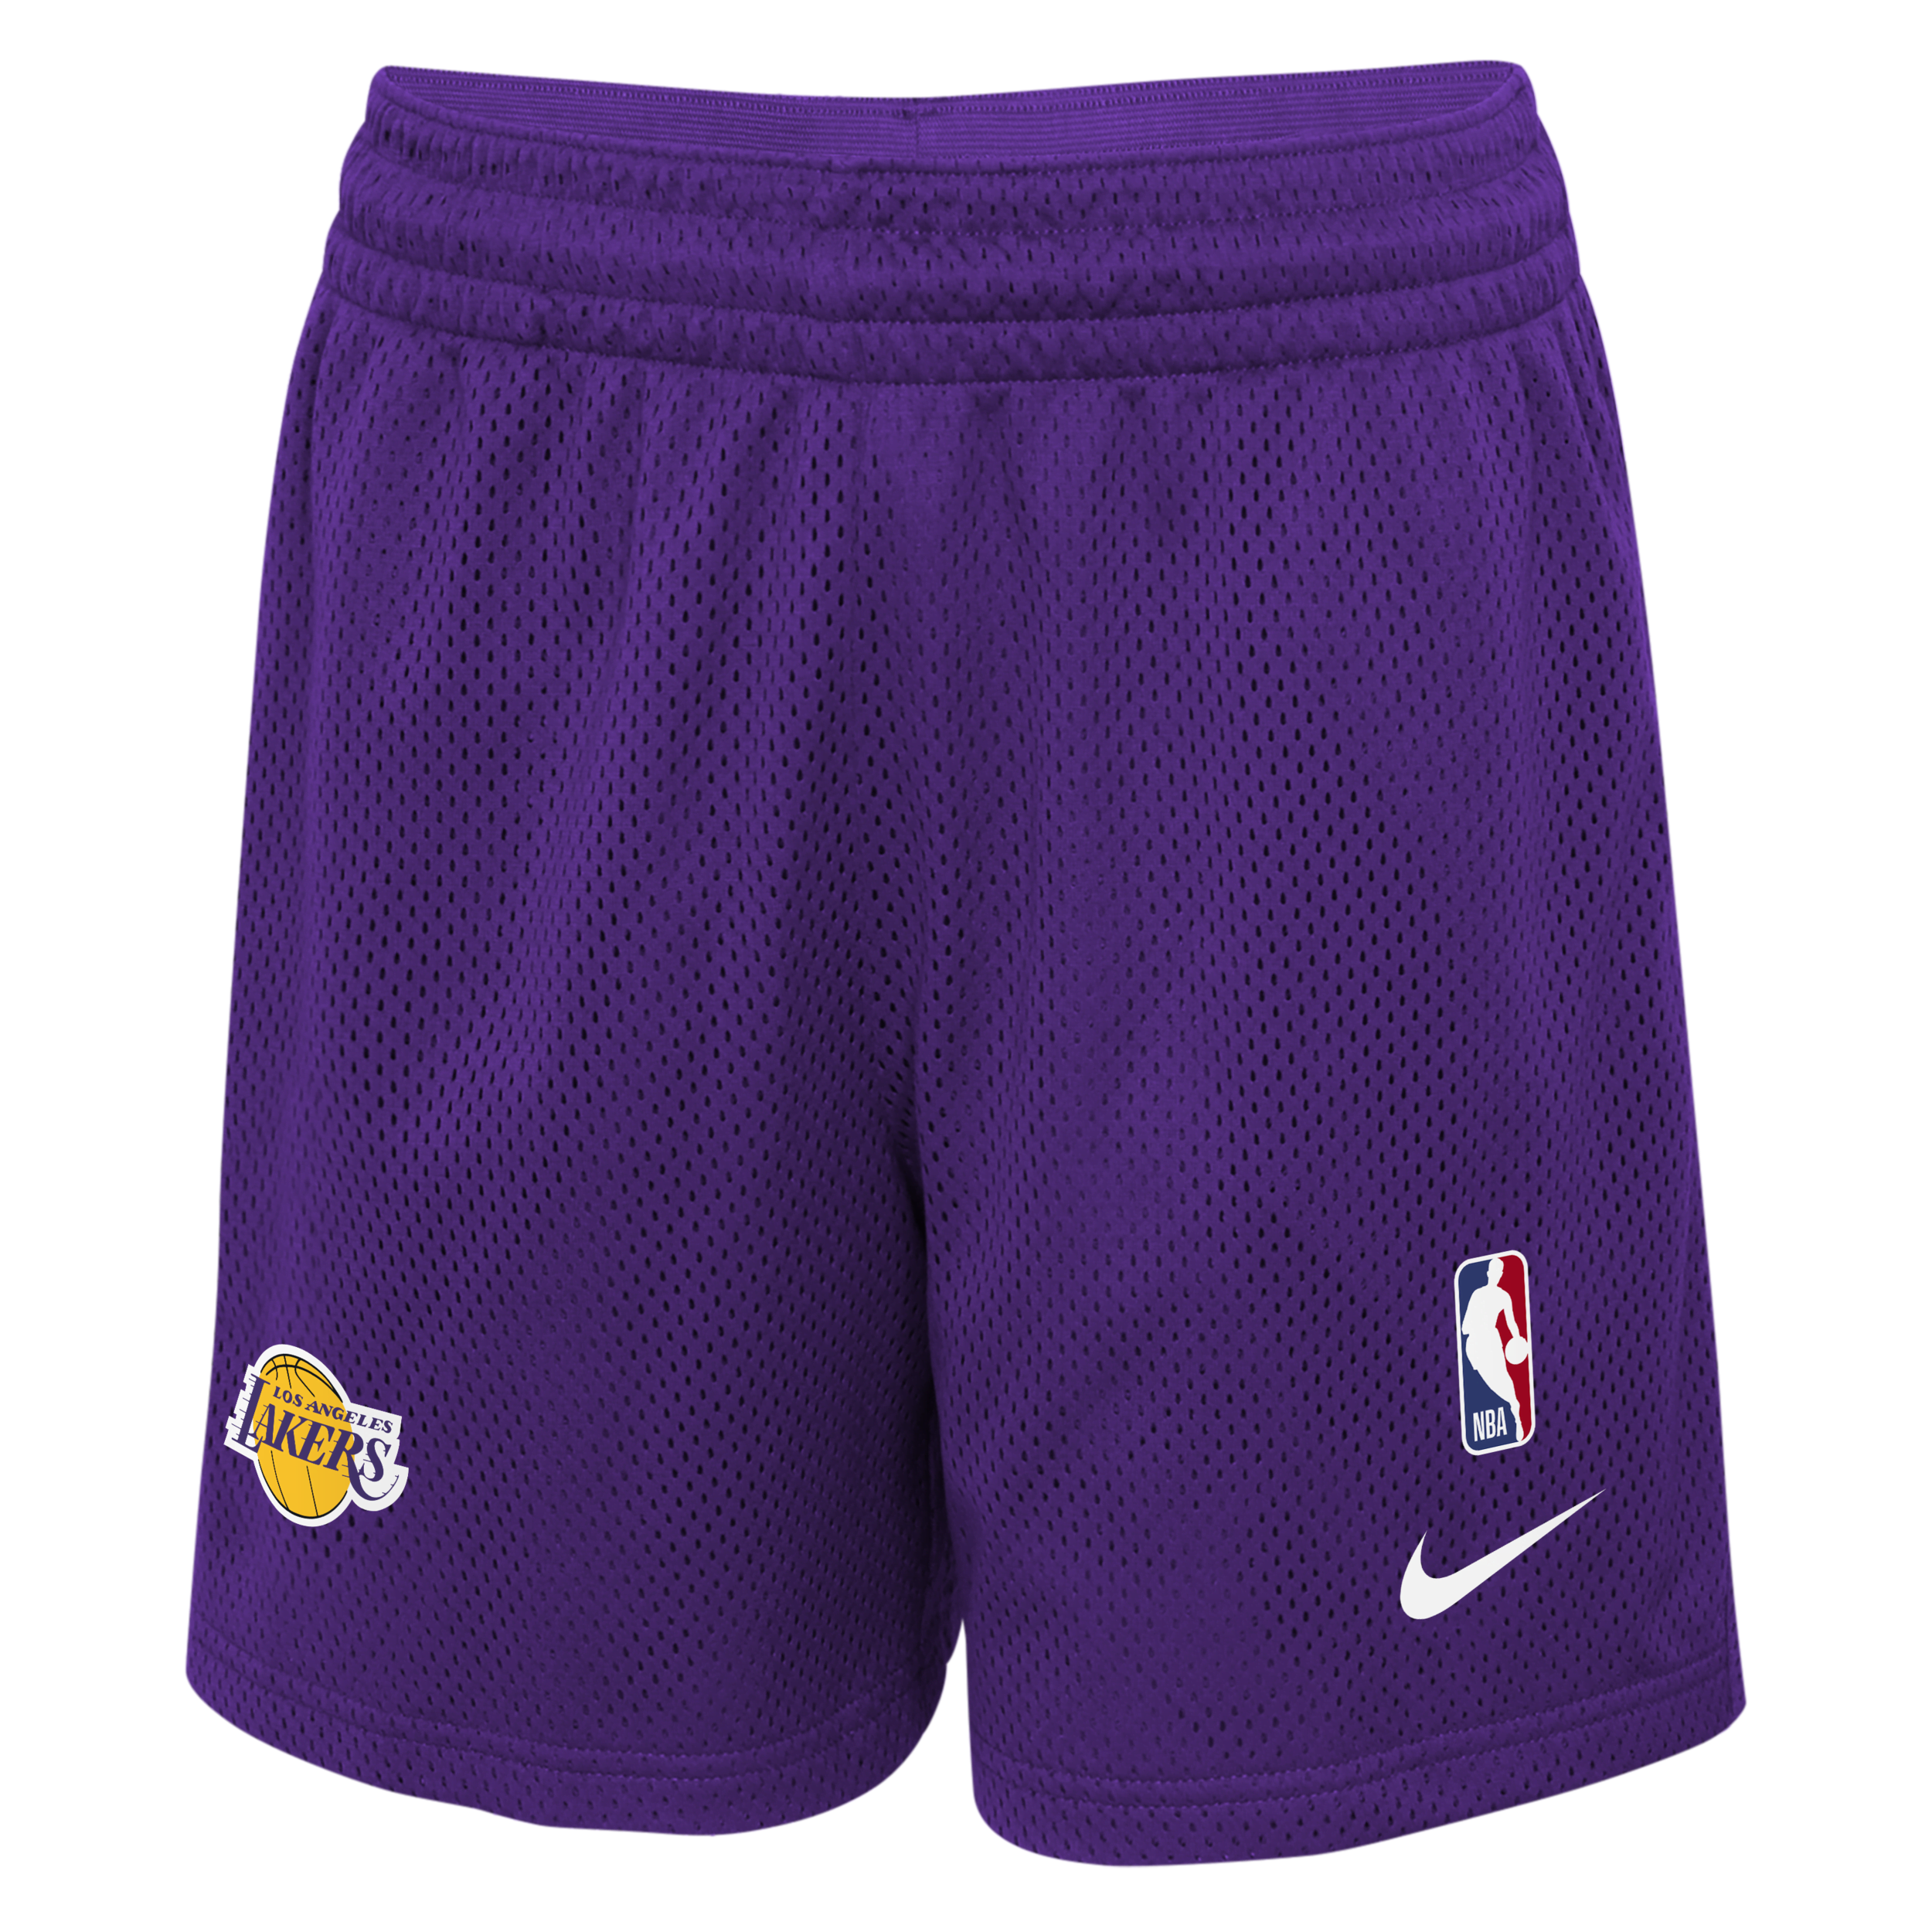 Los Angeles Lakers Nike NBA-shorts voor kids - Paars